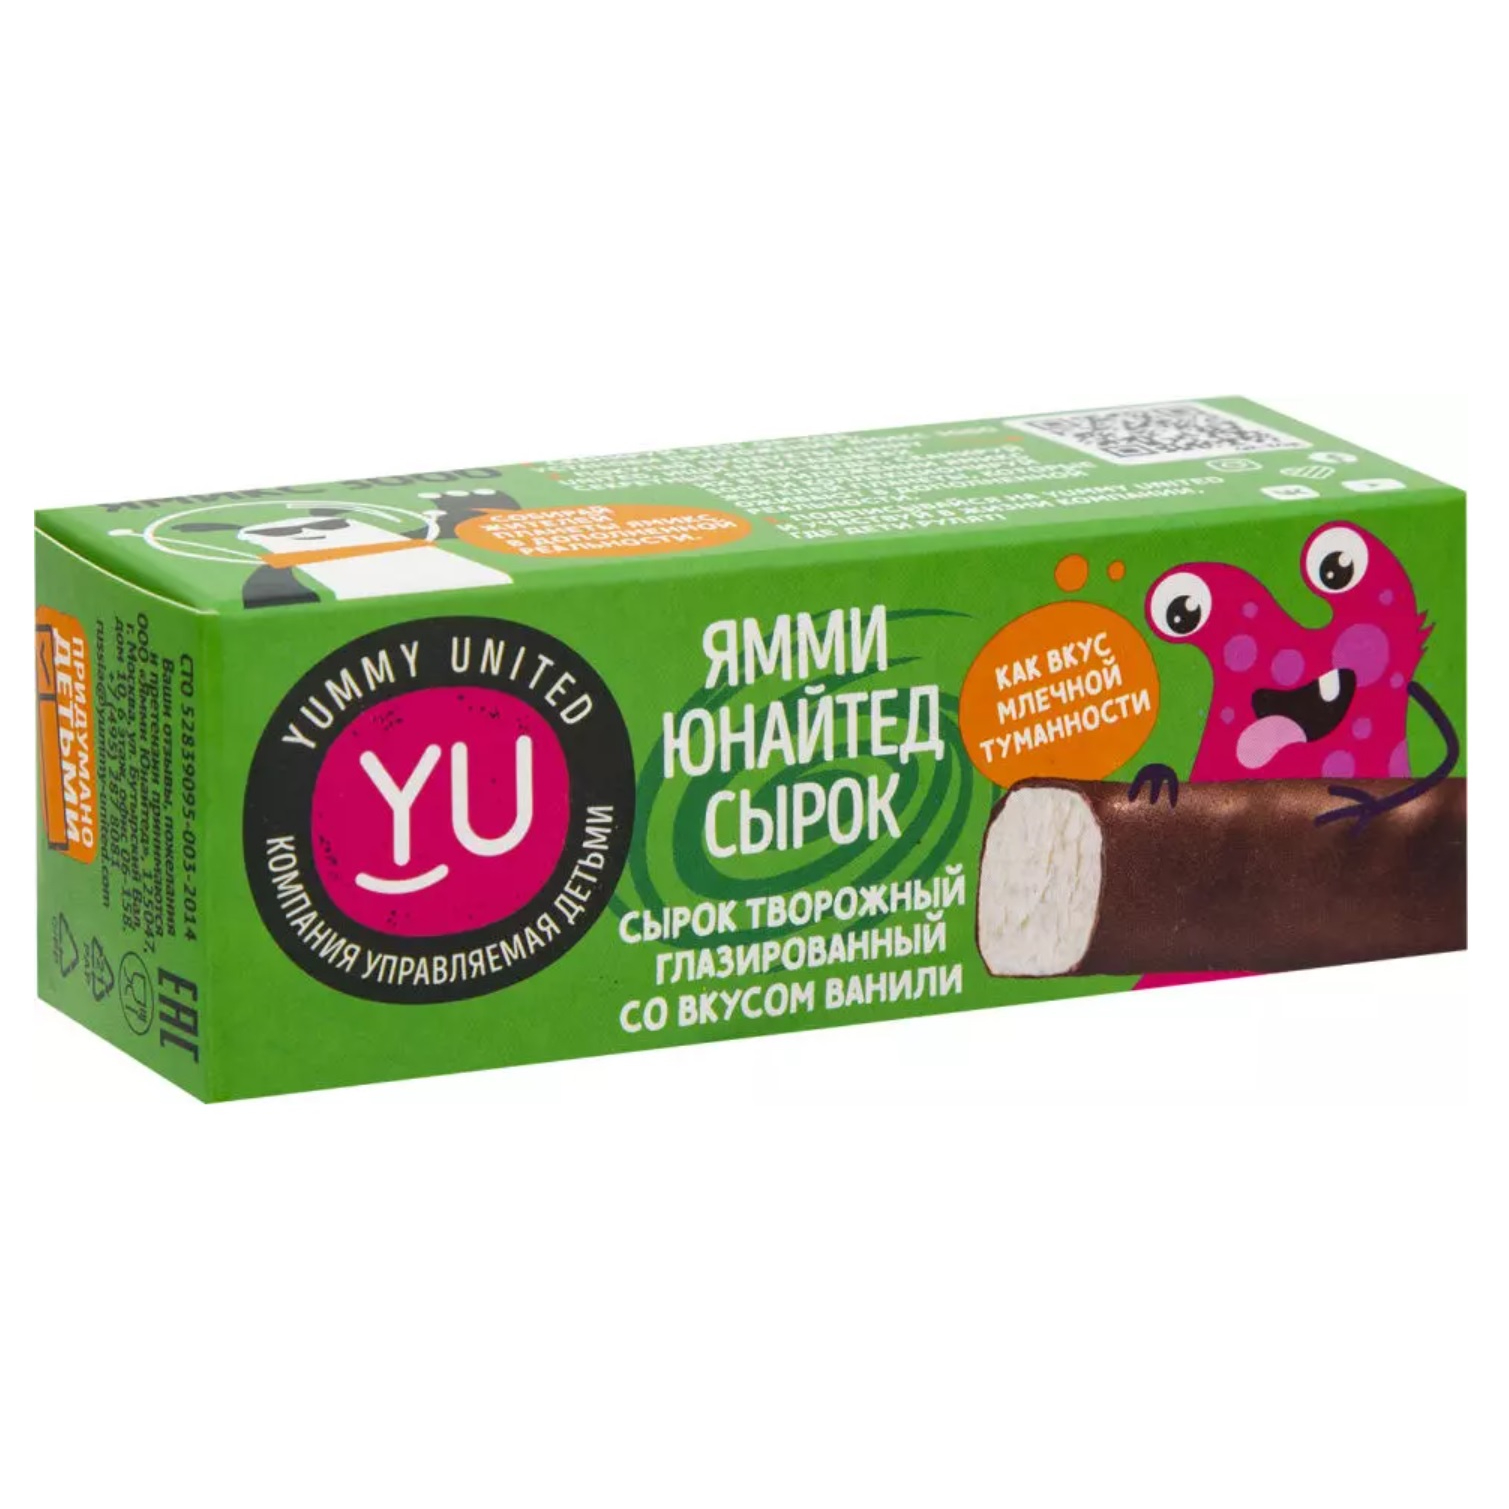 Сырок Yummy United творожный со вкусом ванили глазированный 21%, 40 г